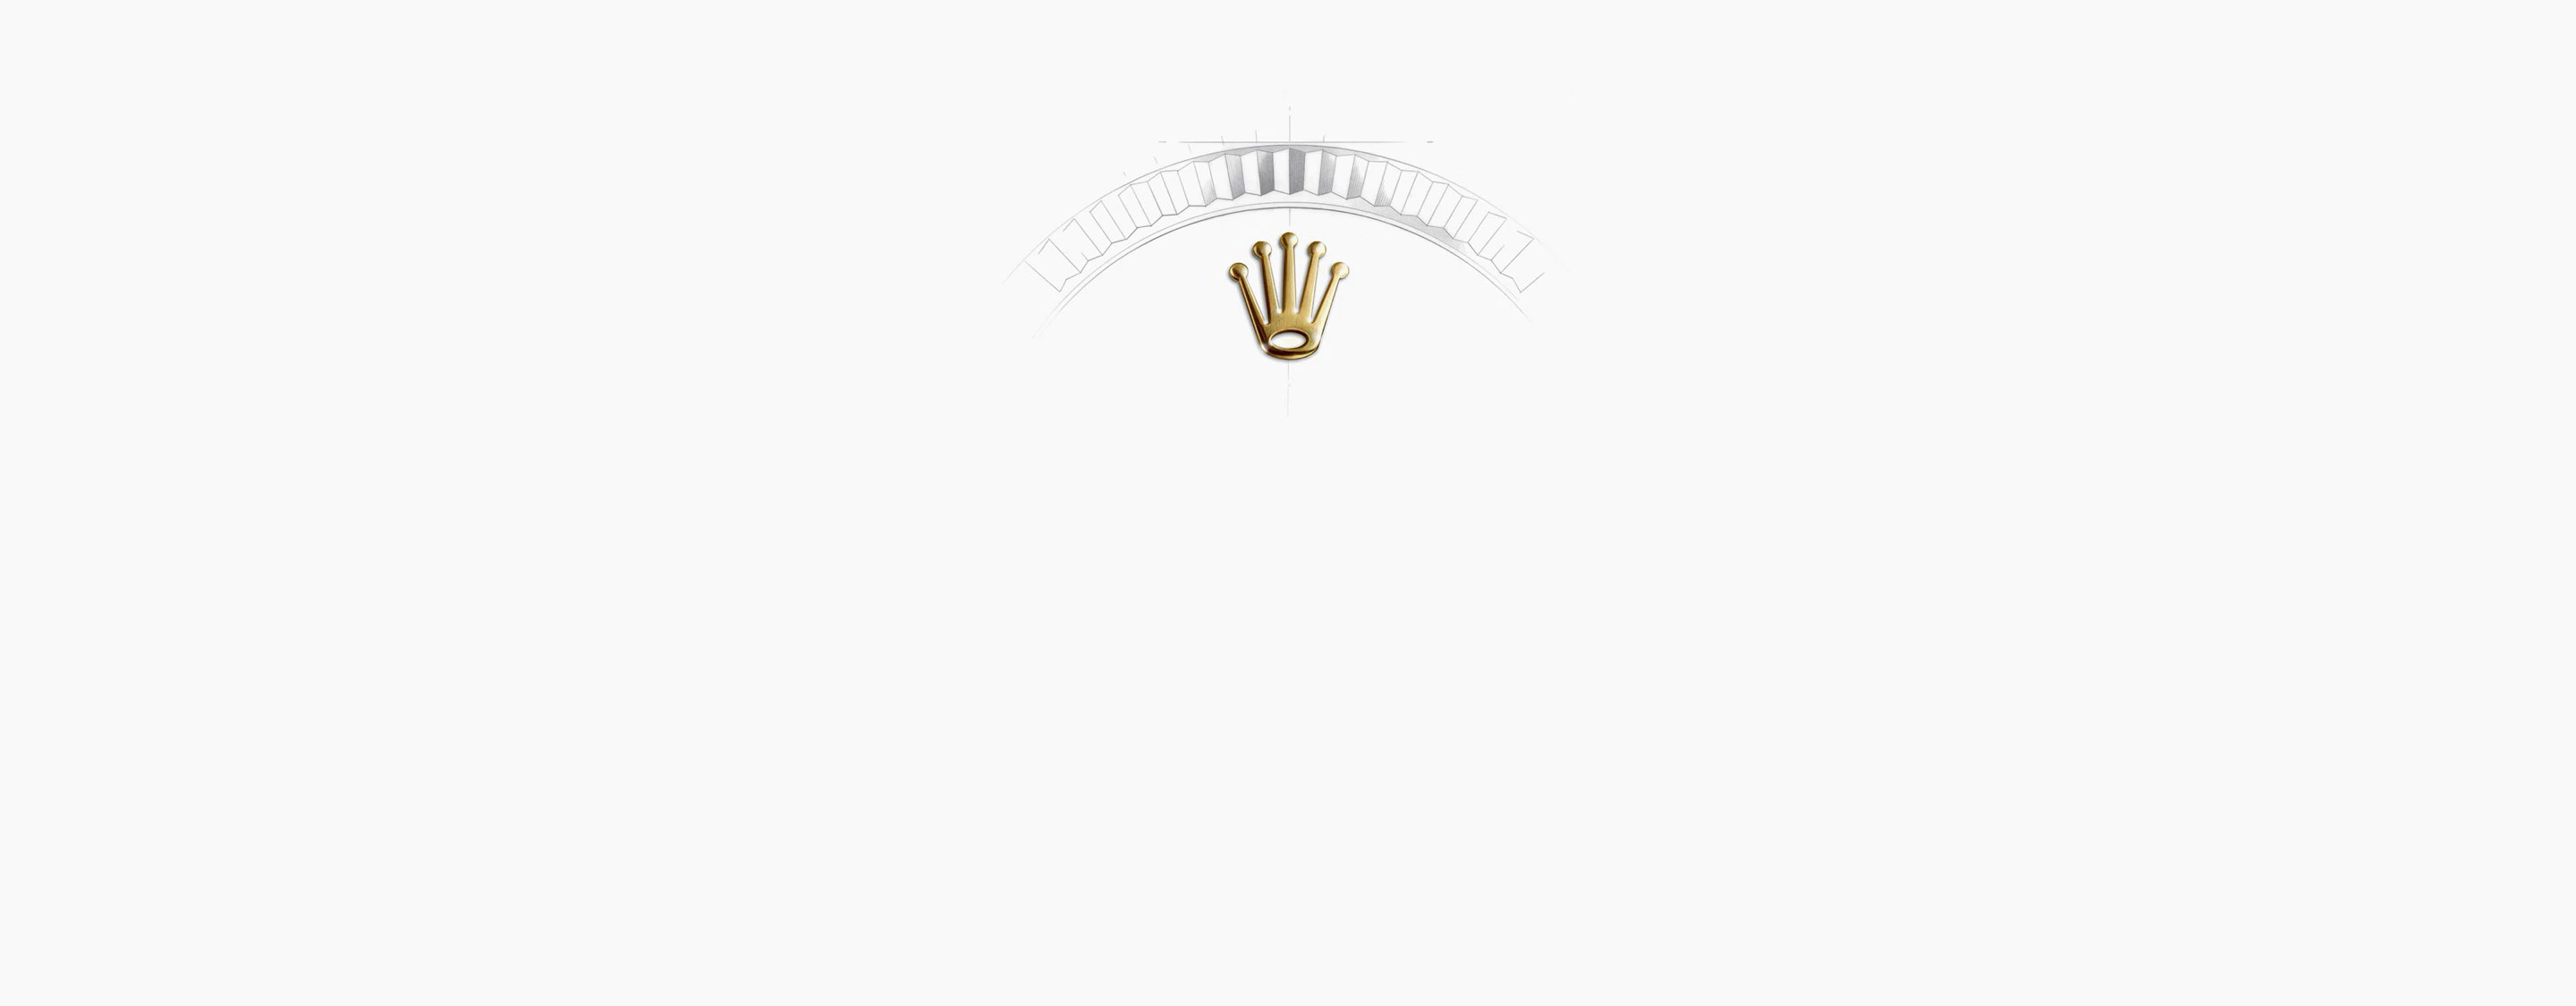 Corona Reloj Rolex 1908 Oro Blanco en Relojería Alemana